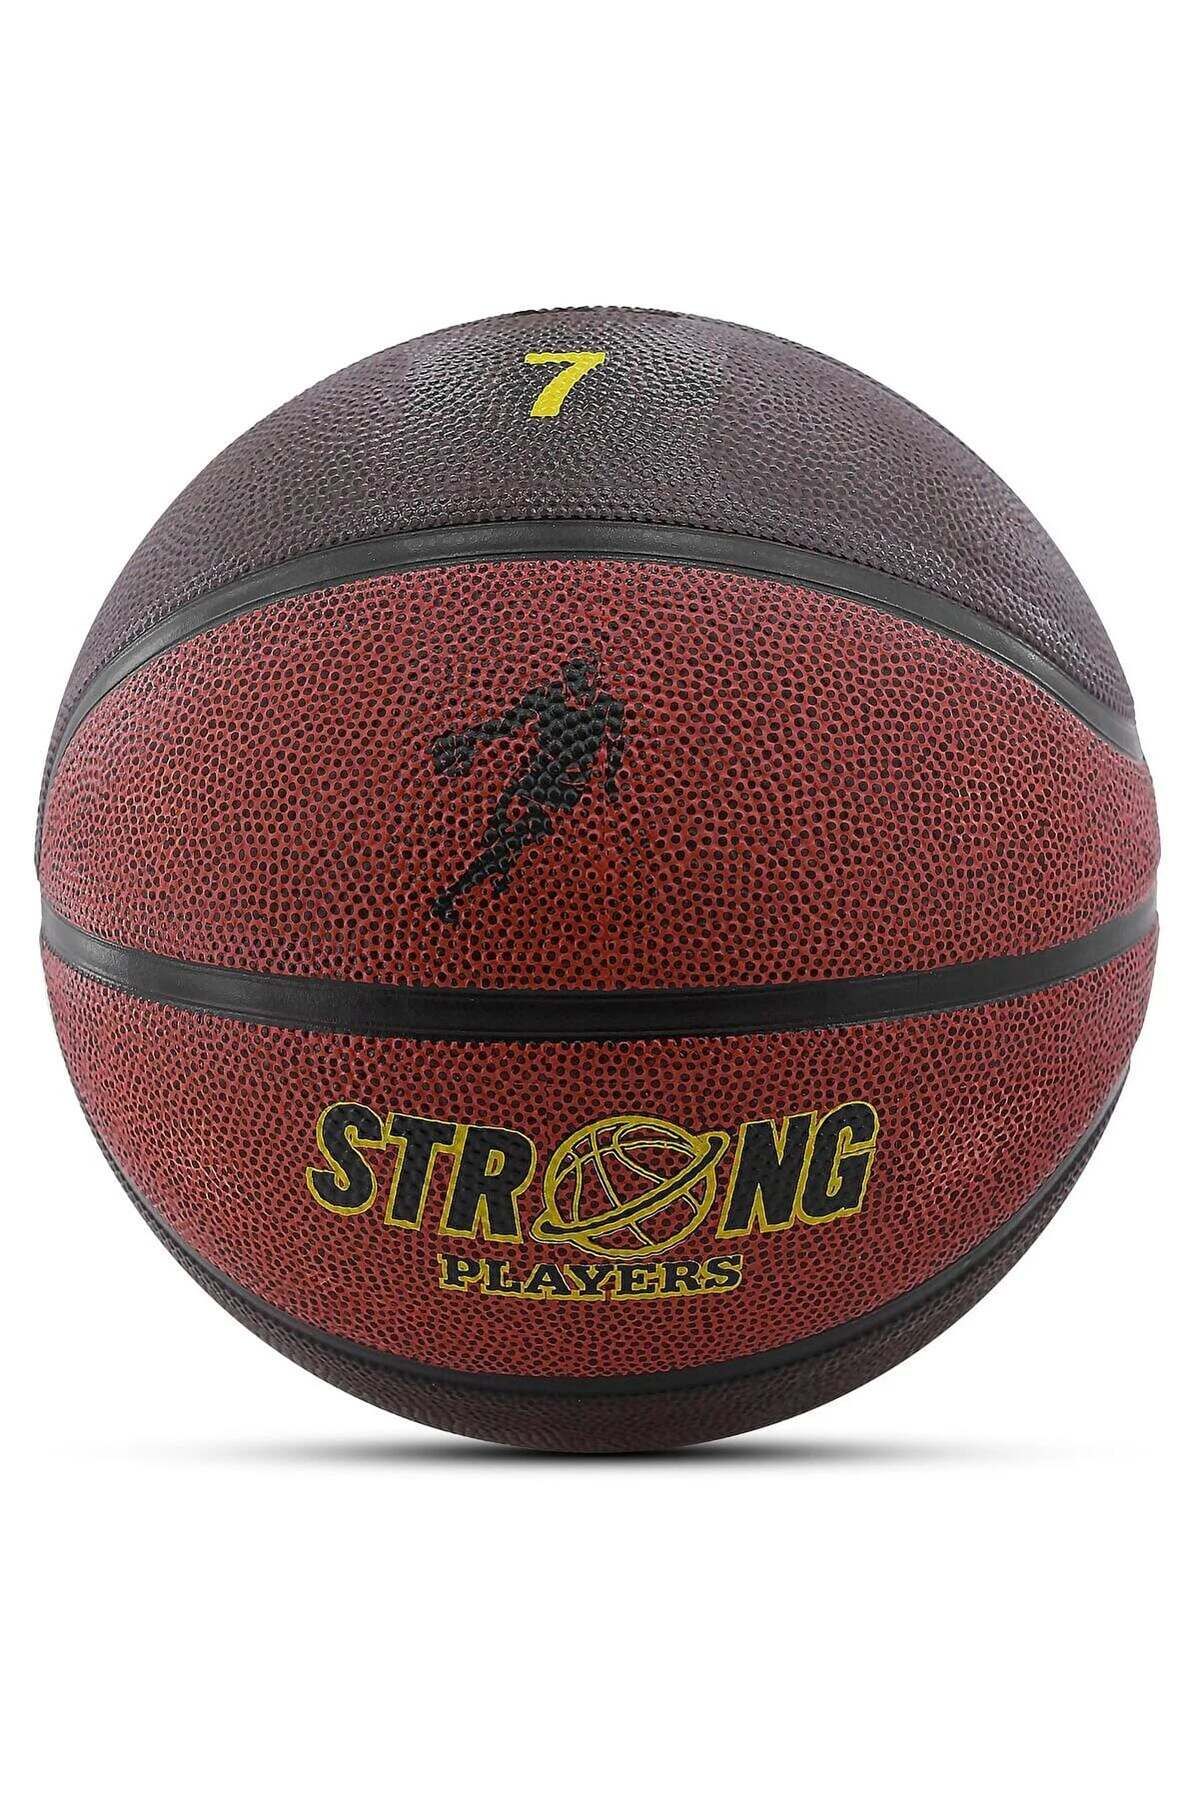 Ozsport Basketbol Topu Pompa Hediyeli Dayanıklı X-Super İç Dış Mekan Koyu Kahverengi 7 Numara